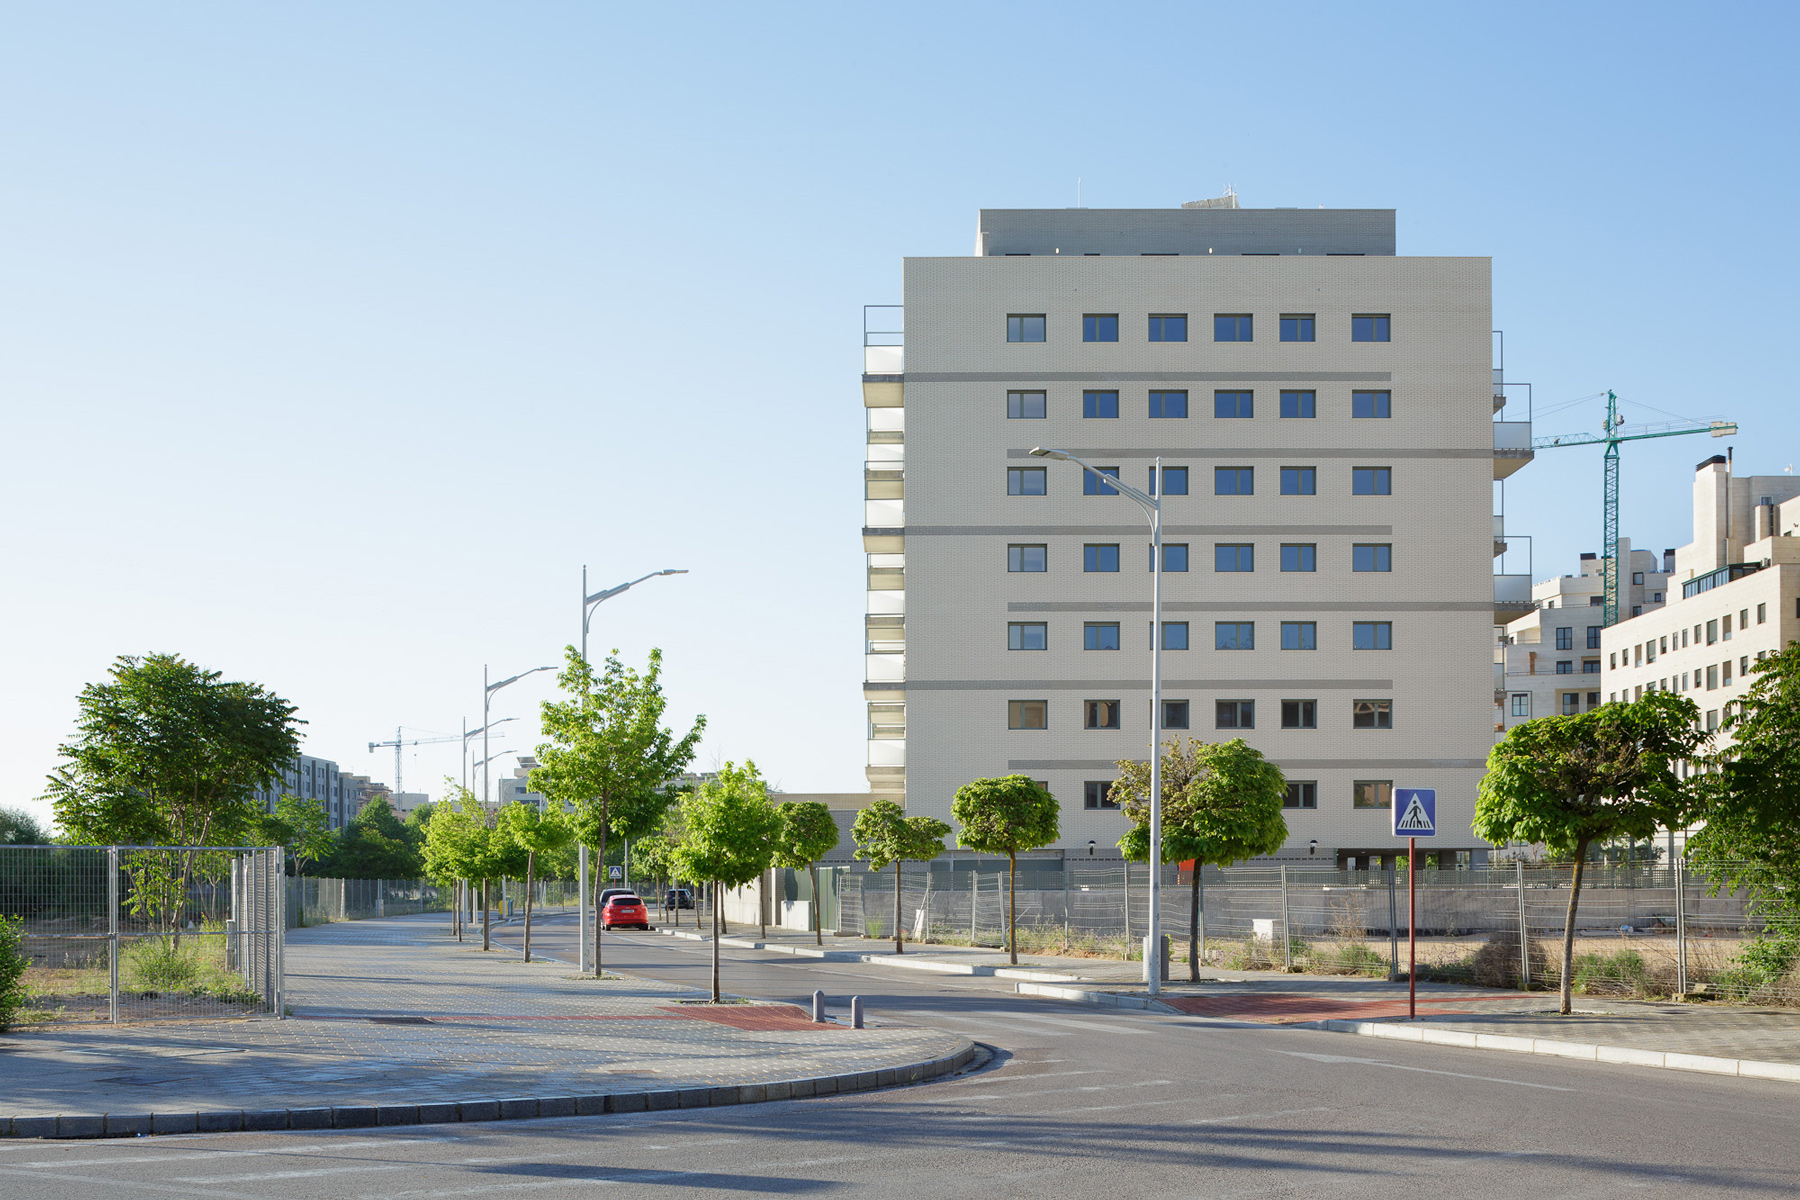 Edificio de 45 viviendas VPO en Albacete  45 Social housing in Albacete